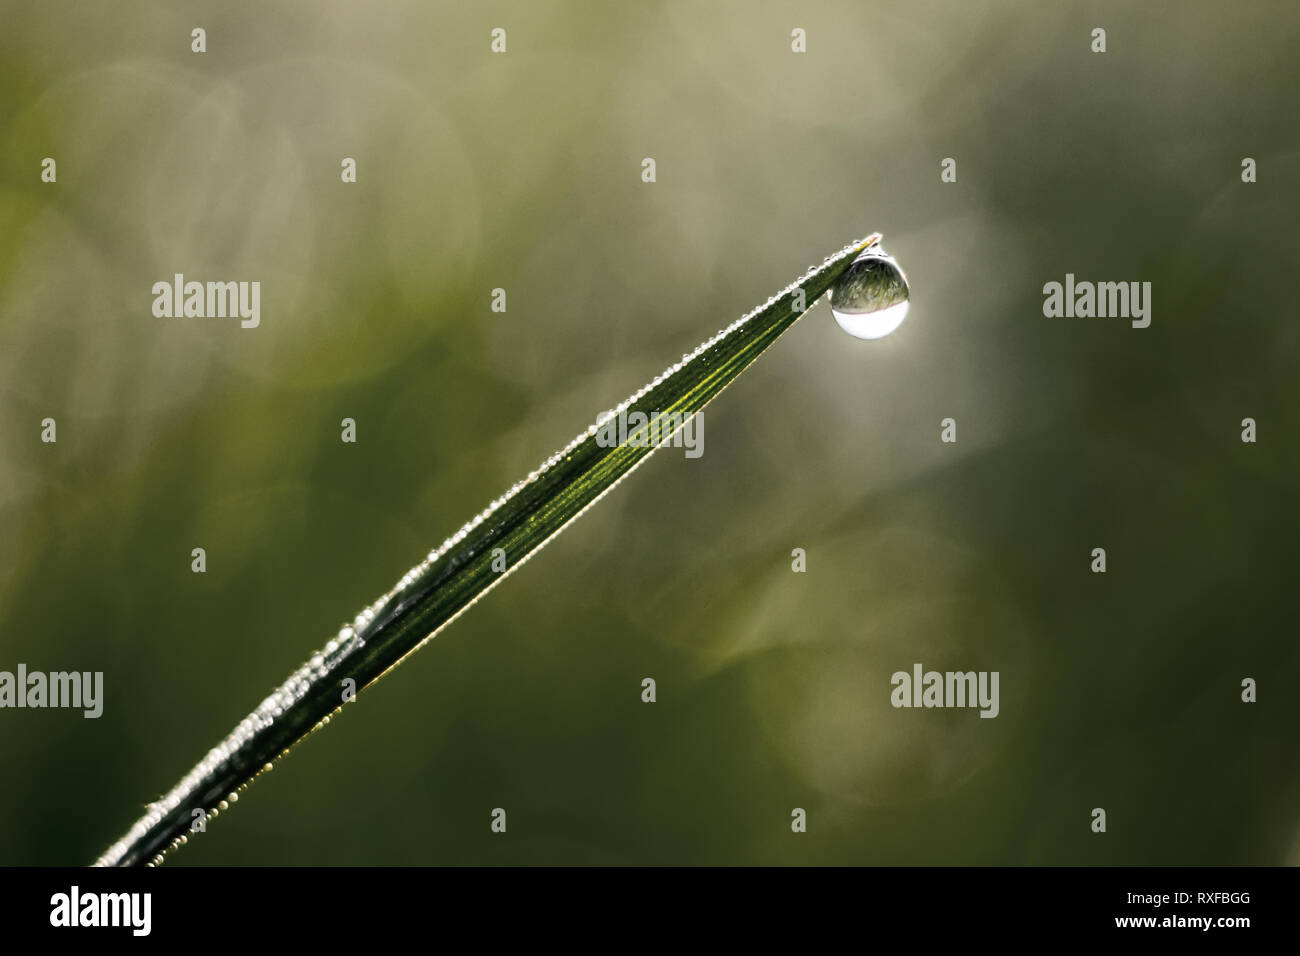 Grashalm mit Wassertropfen mit weichem Hintergrund Stock Photo